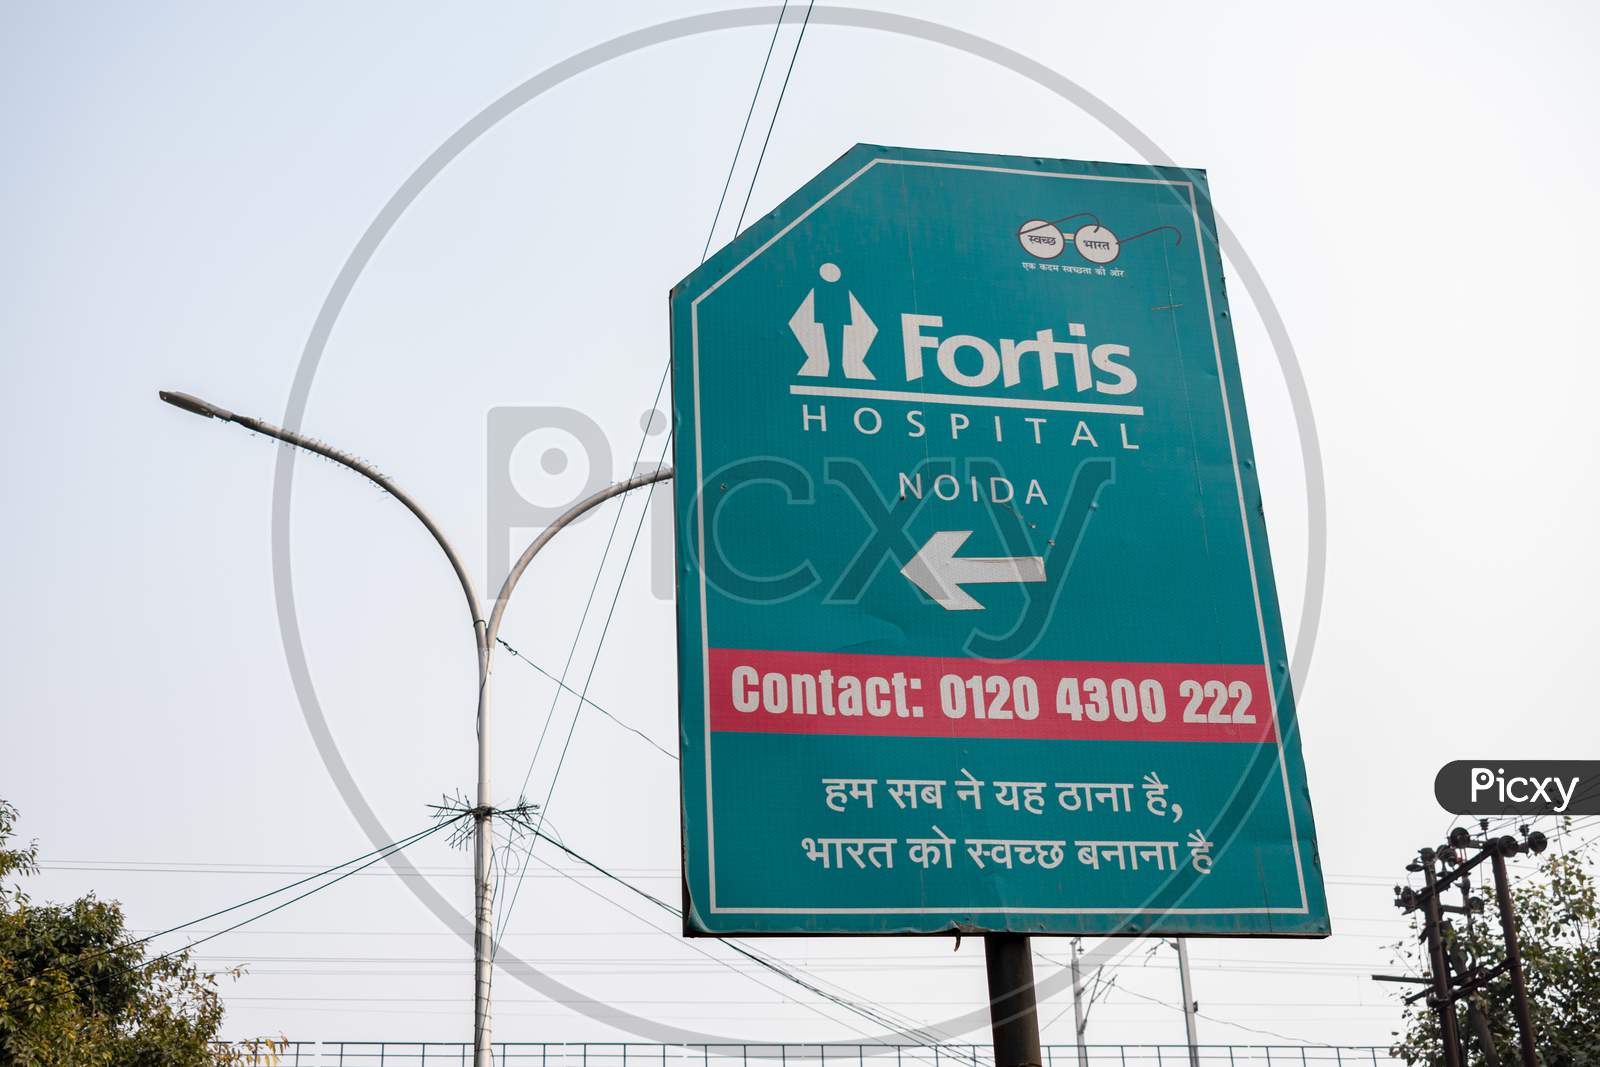 Fortis Hospital Noida